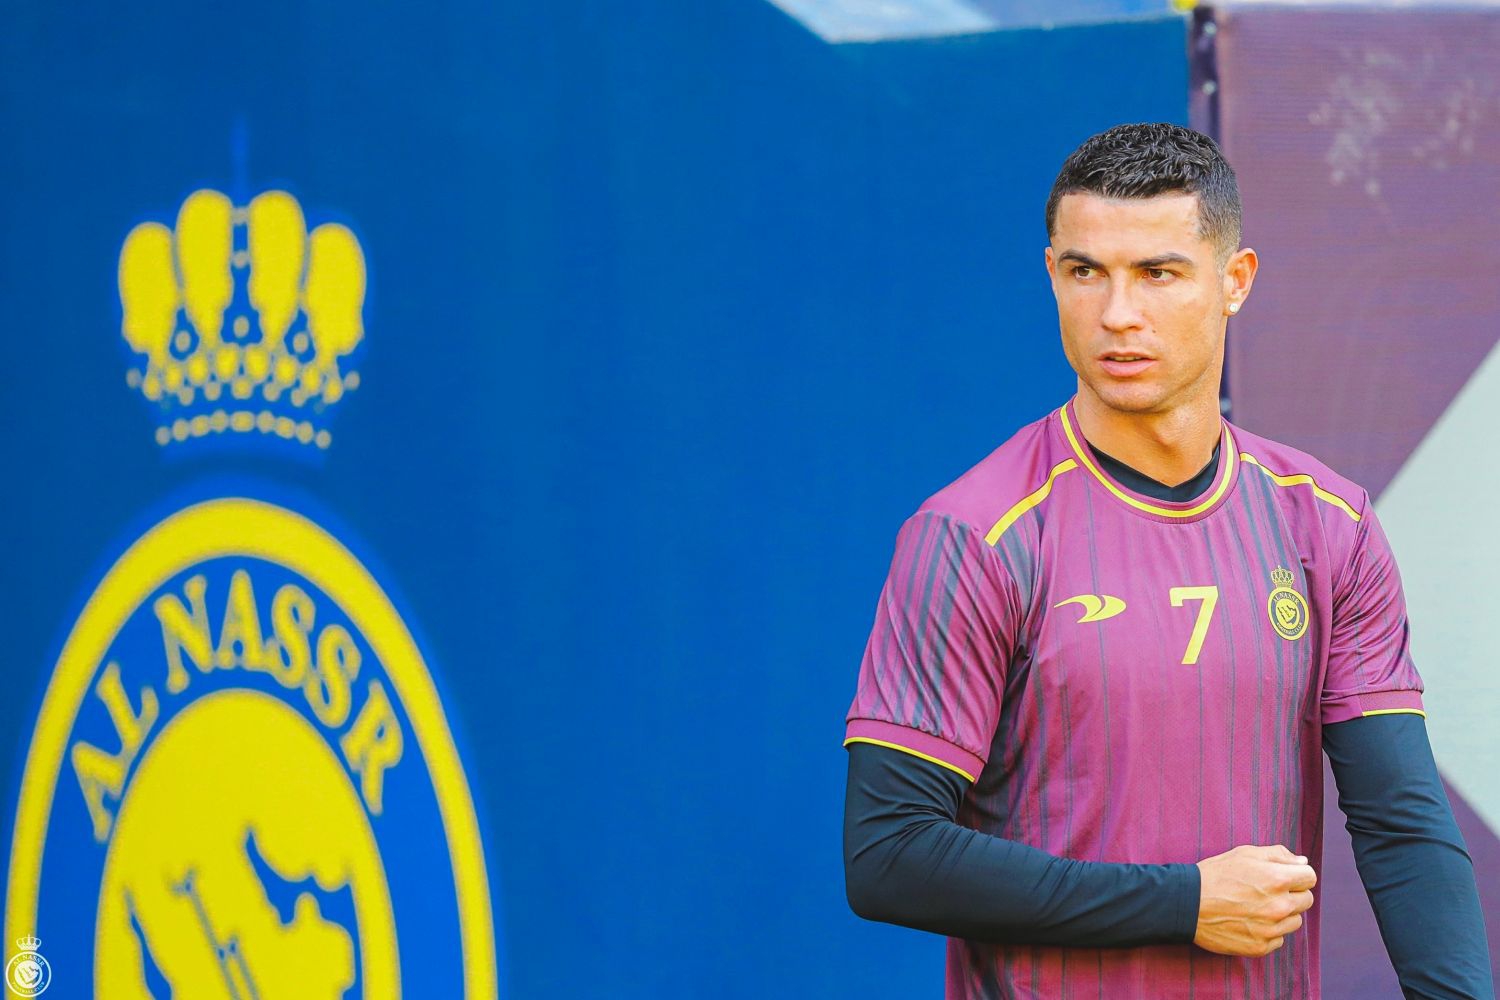 Zmarnowana szansa drużyny Cristiano Ronaldo. Al-Hilal zmiażdżyło Al-Nassr [WIDEO]